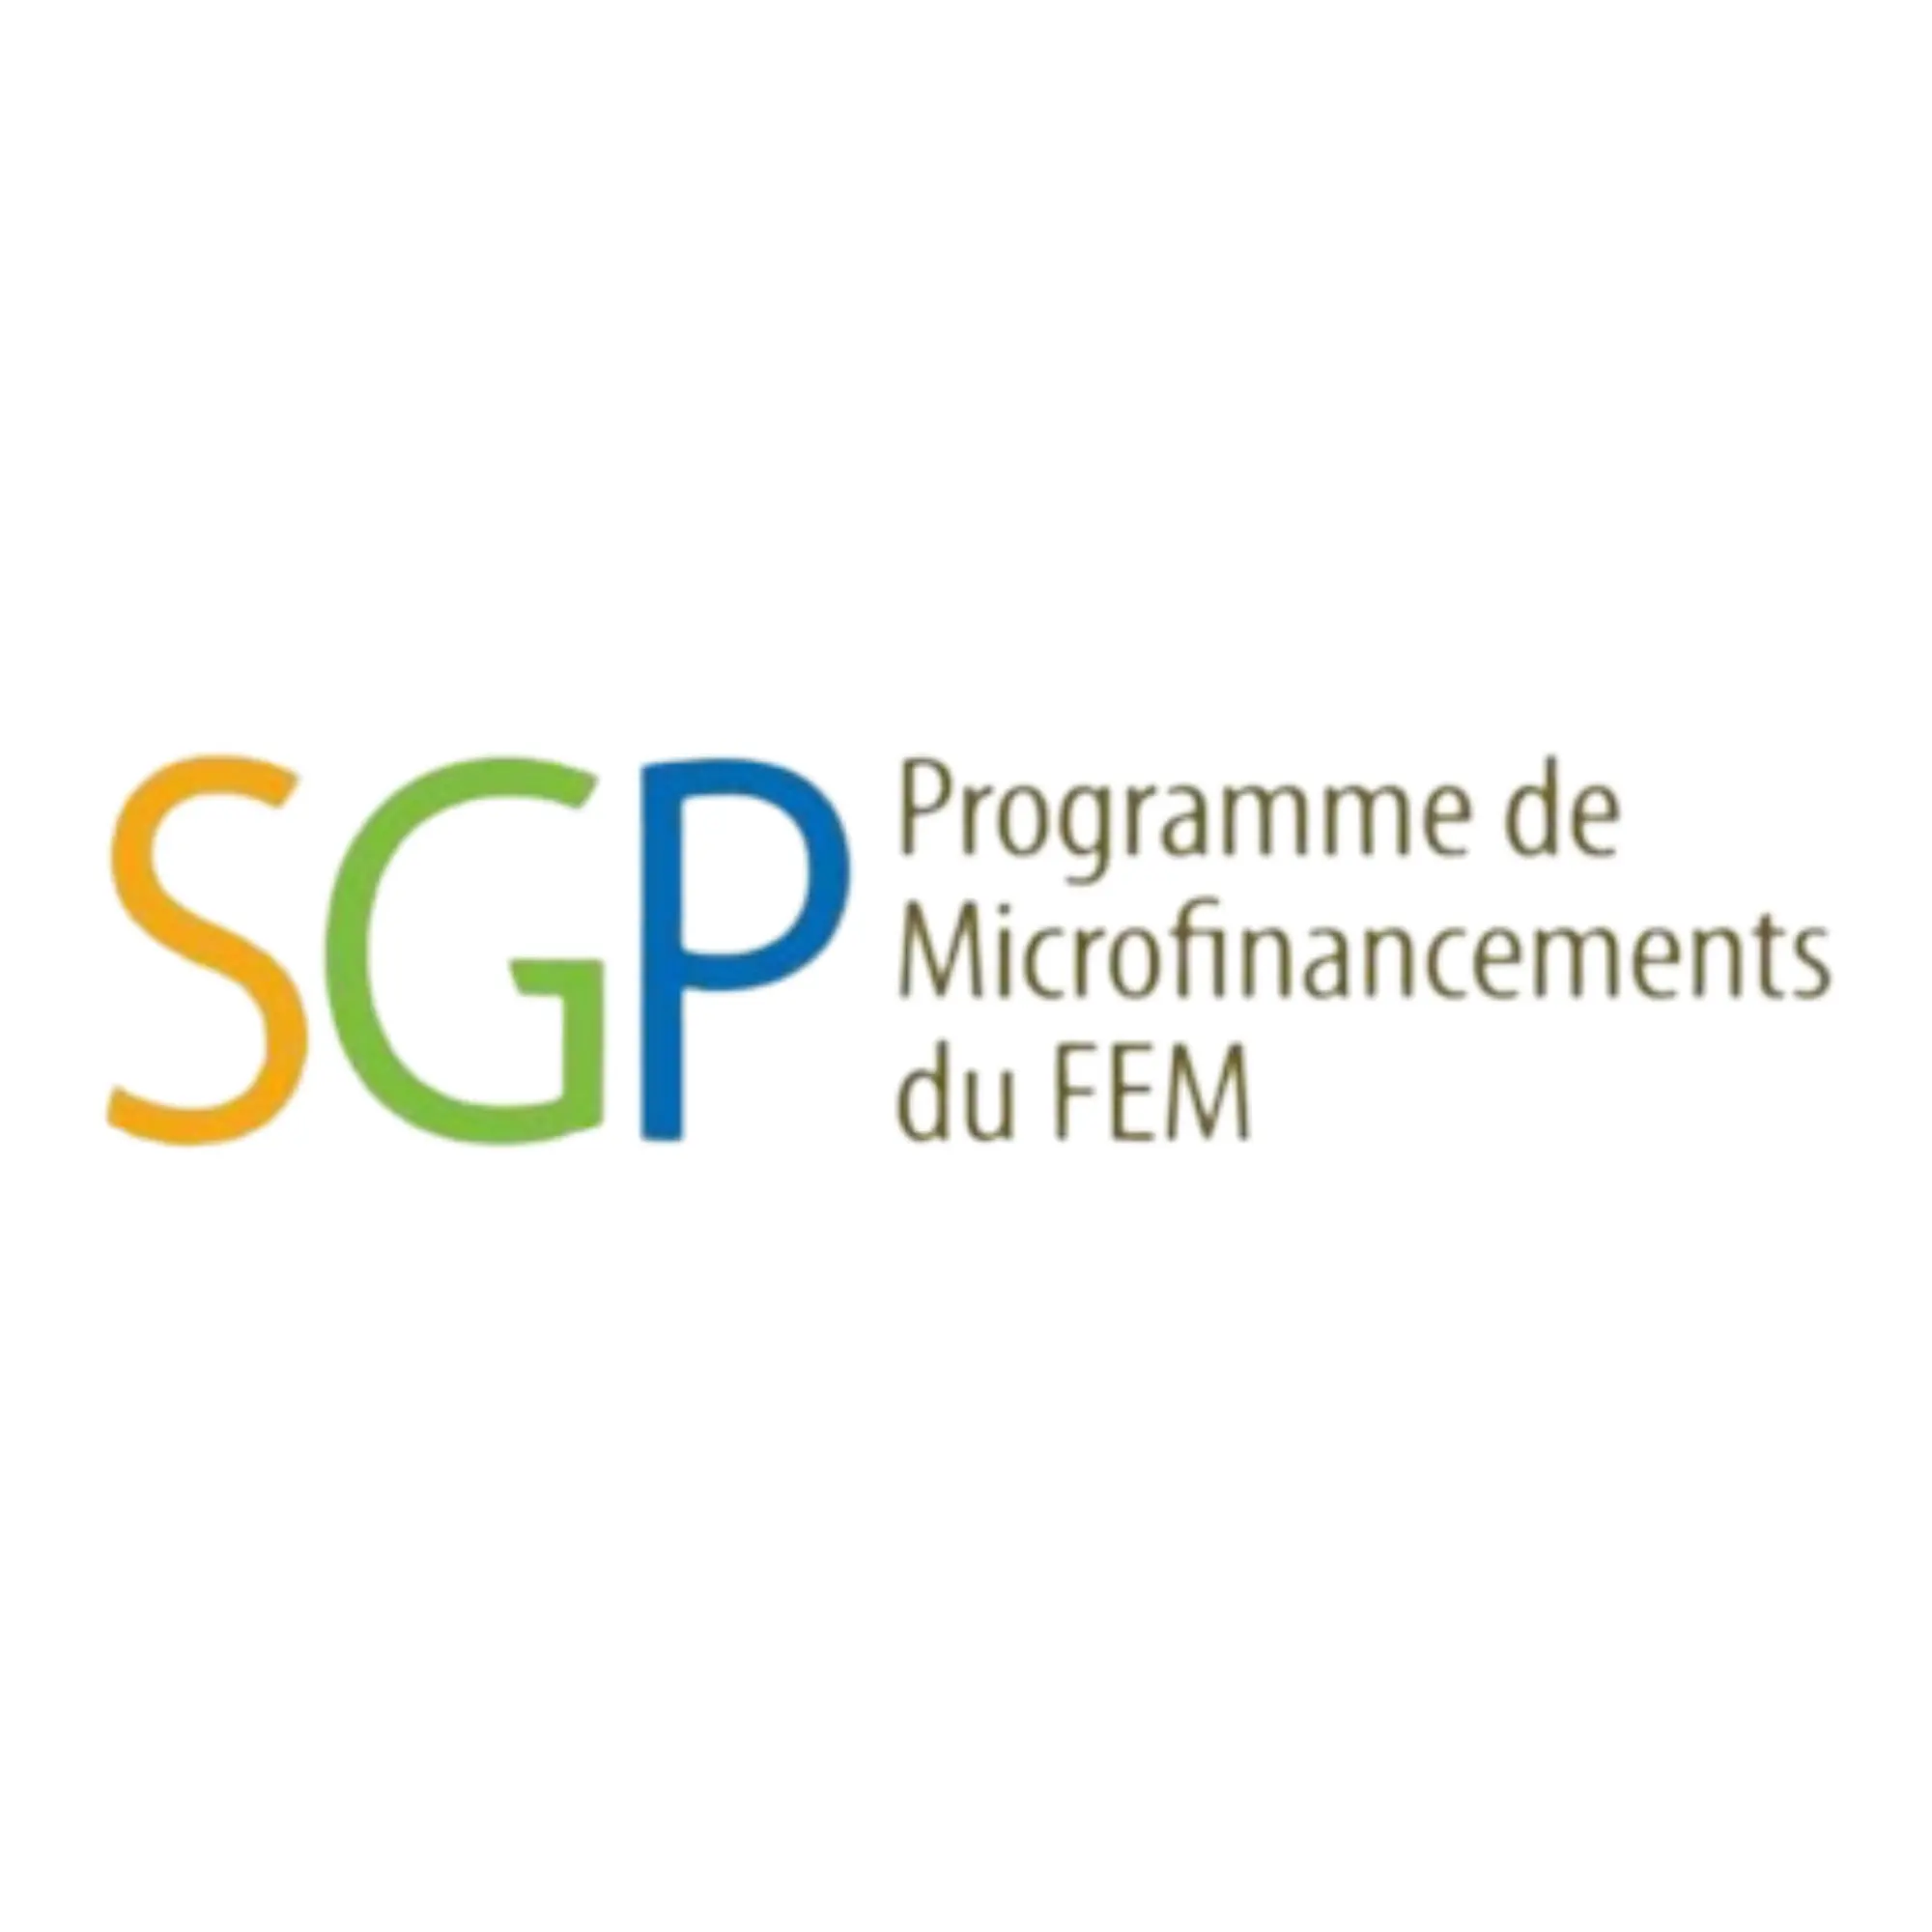 Programme de Microfinancements du FEM